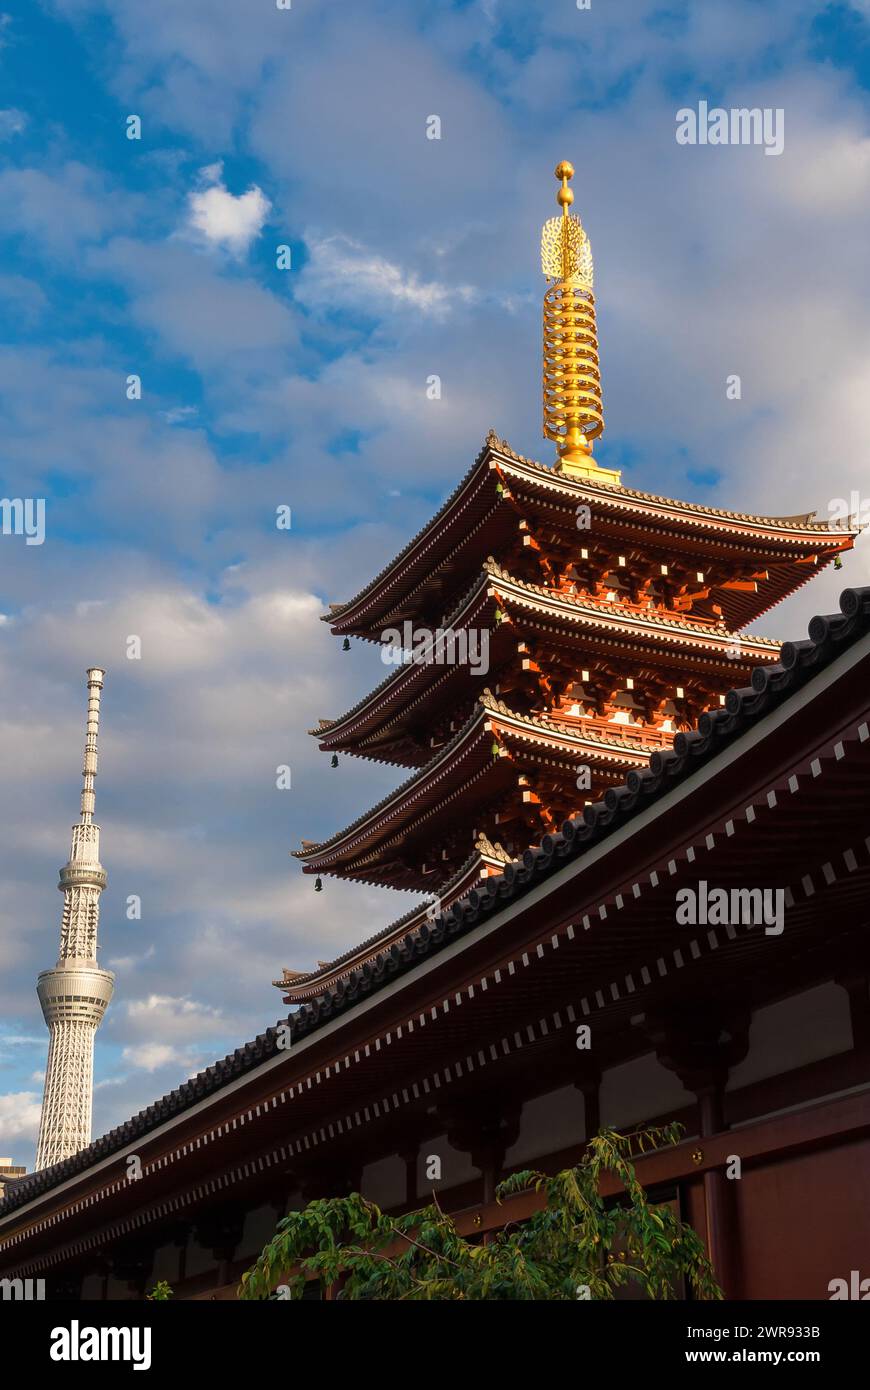 Japón entre tradición y modernidad. Antigua pagoda de Senso-ji hermosa en Asakusa con el nuevo árbol Skytree de Tokio, la torre más alta del mundo Foto de stock